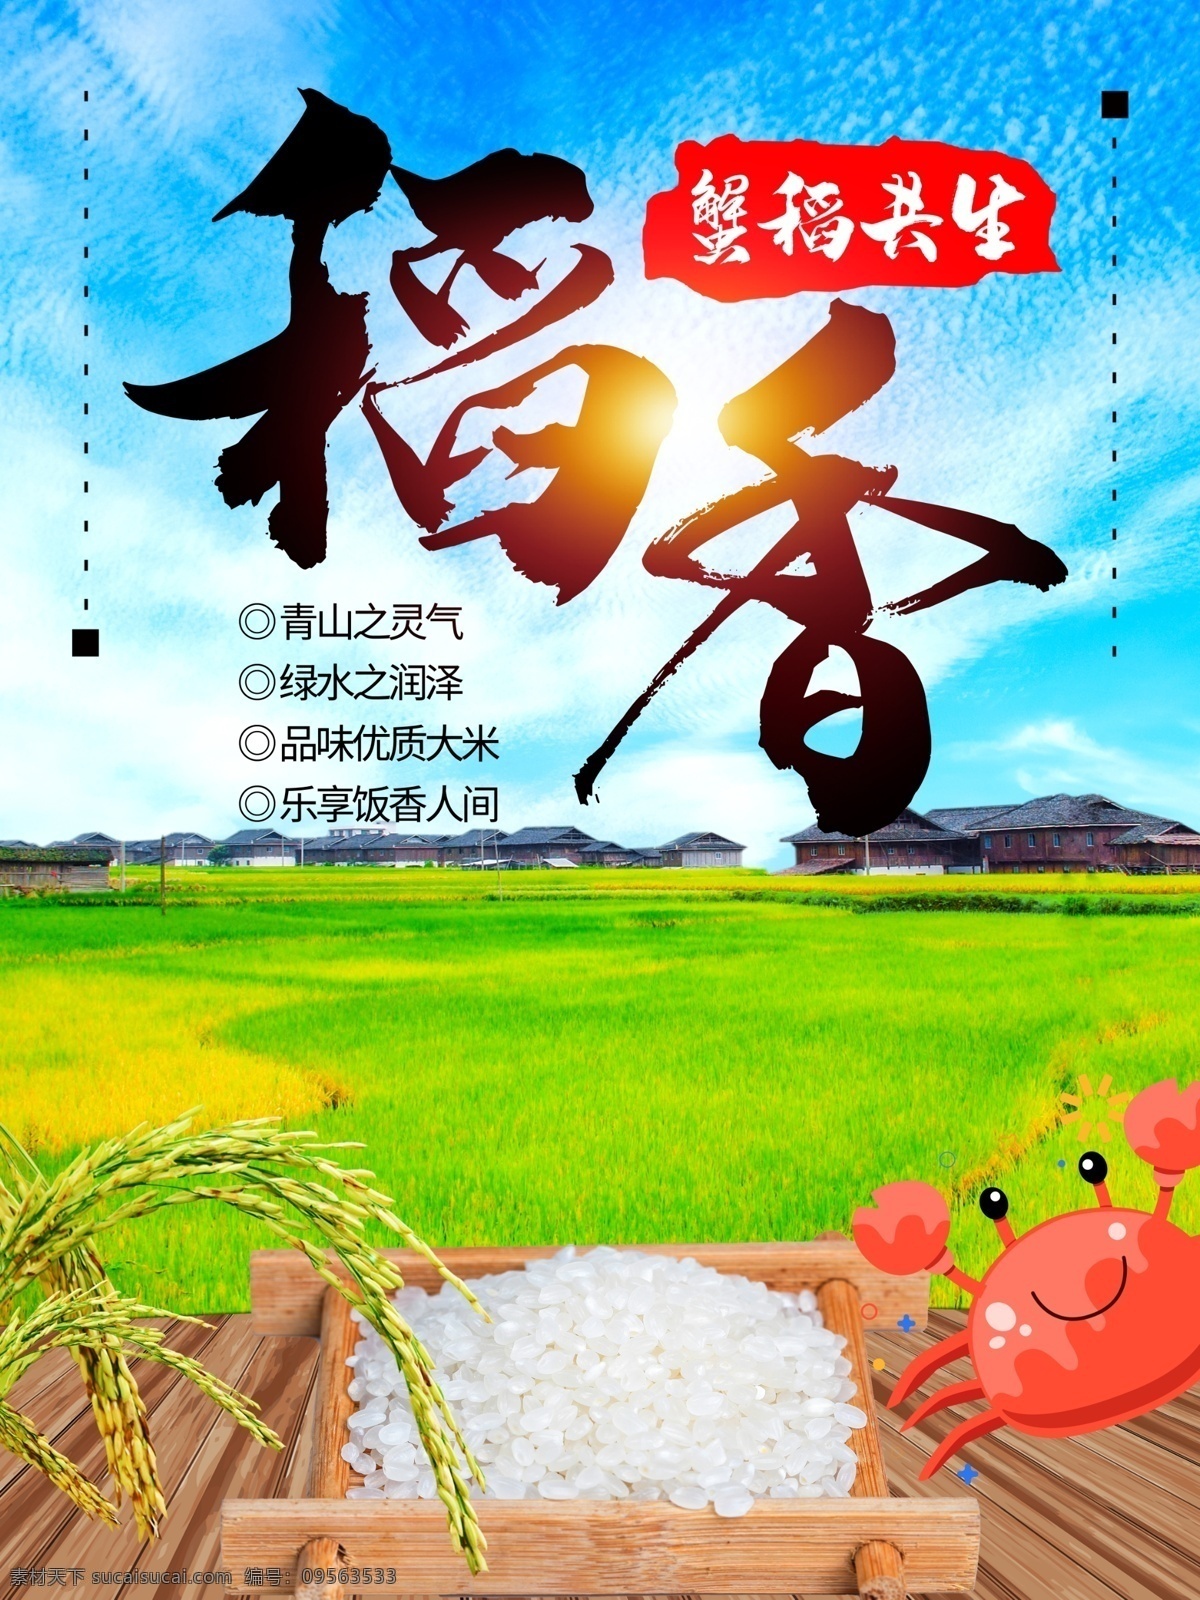 稻香大米海报 大米海报 有机大米 大米广告 优质大米 大米促销 大米宣传 稻香 水稻 田园背景 绿叶 蓝天白云 绿色食品 健康